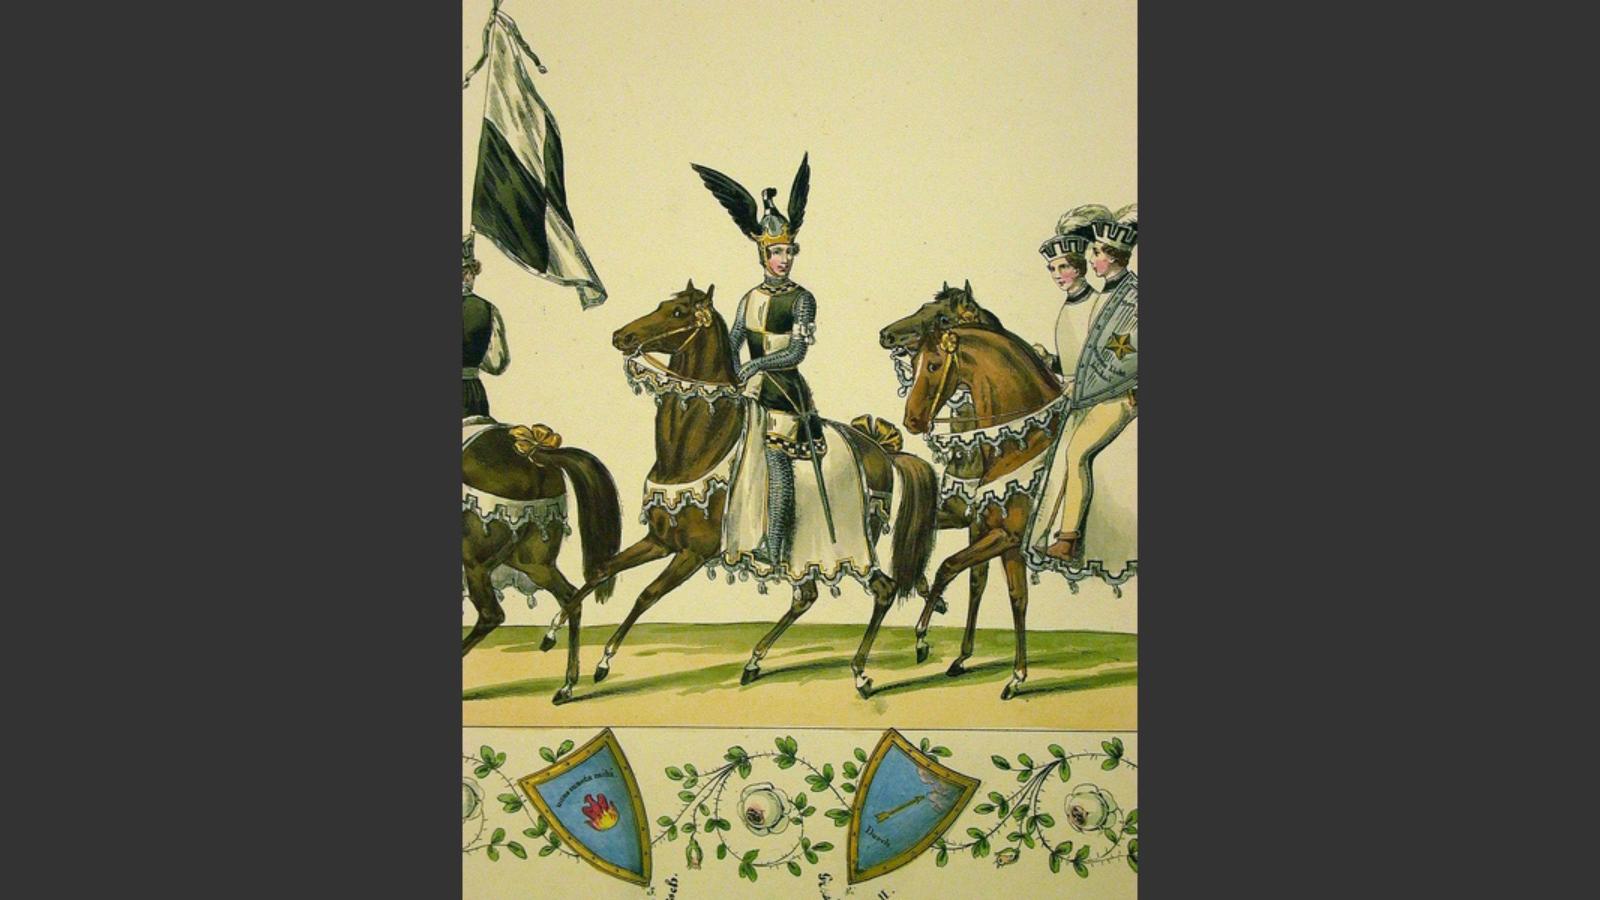 Helm und Schild stammen von Prinz Friedrich Wilhelm Ludwig von Preußen, dem Anführer der siebenten Quadrille. Auf dem Fest repräsentierte er das Haus „Hohenzollern“. Vor ihm wurde das Hohenzollernsche Pannier getragen, hinter ihm folgten zwei Pagen, von denen einer den Schild trug. Nach den Pagen ritten vier Ritter, zuletzt kamen vier Knappen.